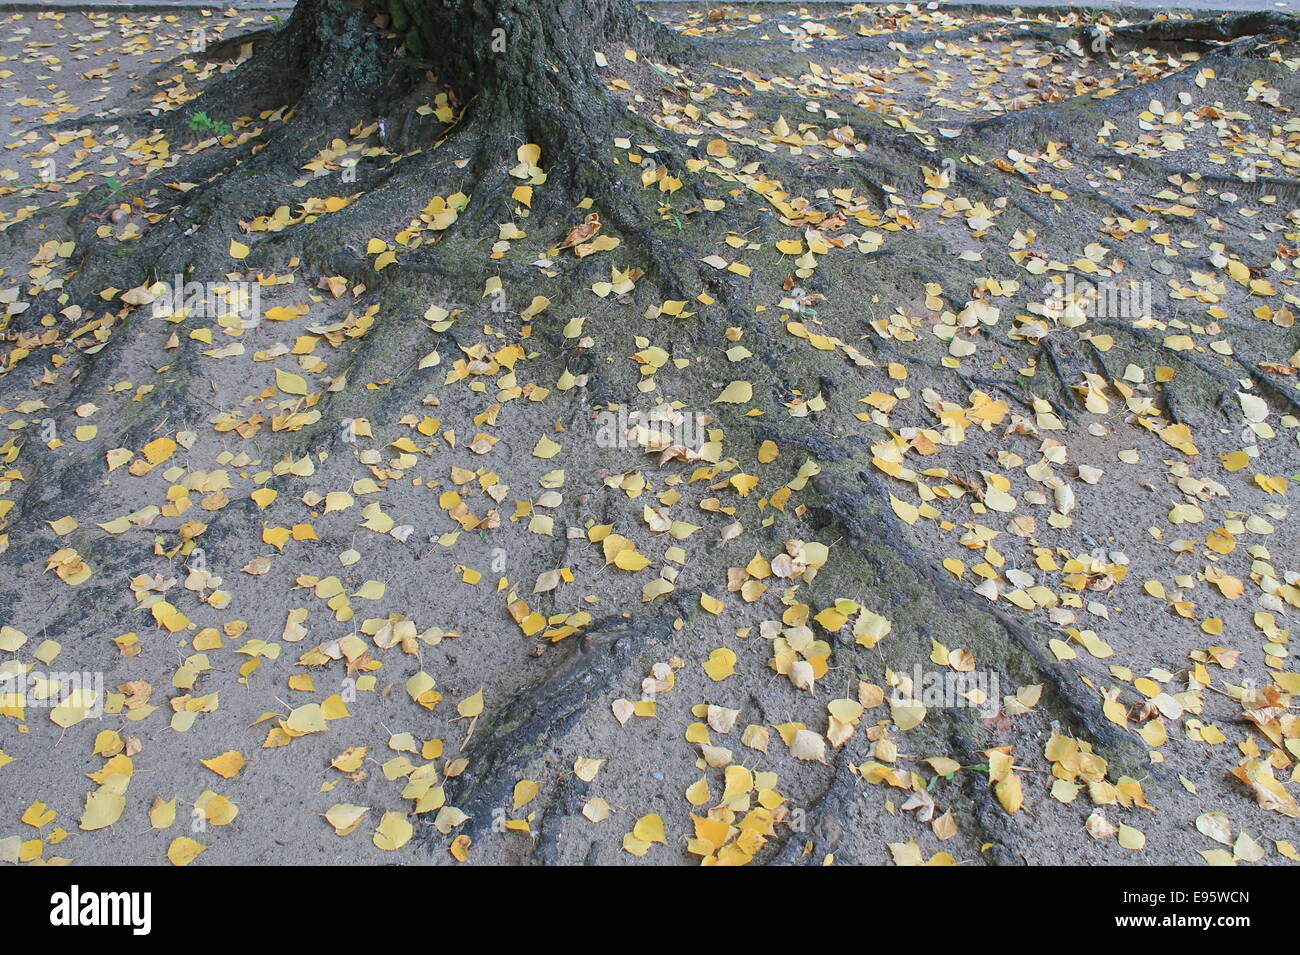 Arbre généalogique mis à la terre profonde avec de belles racines solides couvrant de feuilles gouttes jaune Banque D'Images